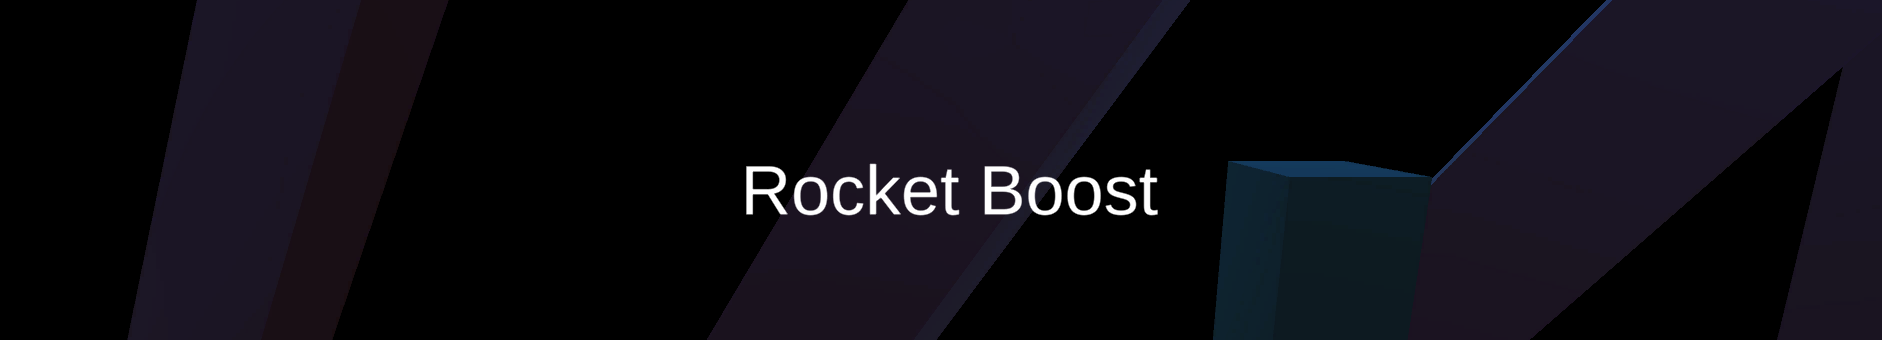 Rocket Boost